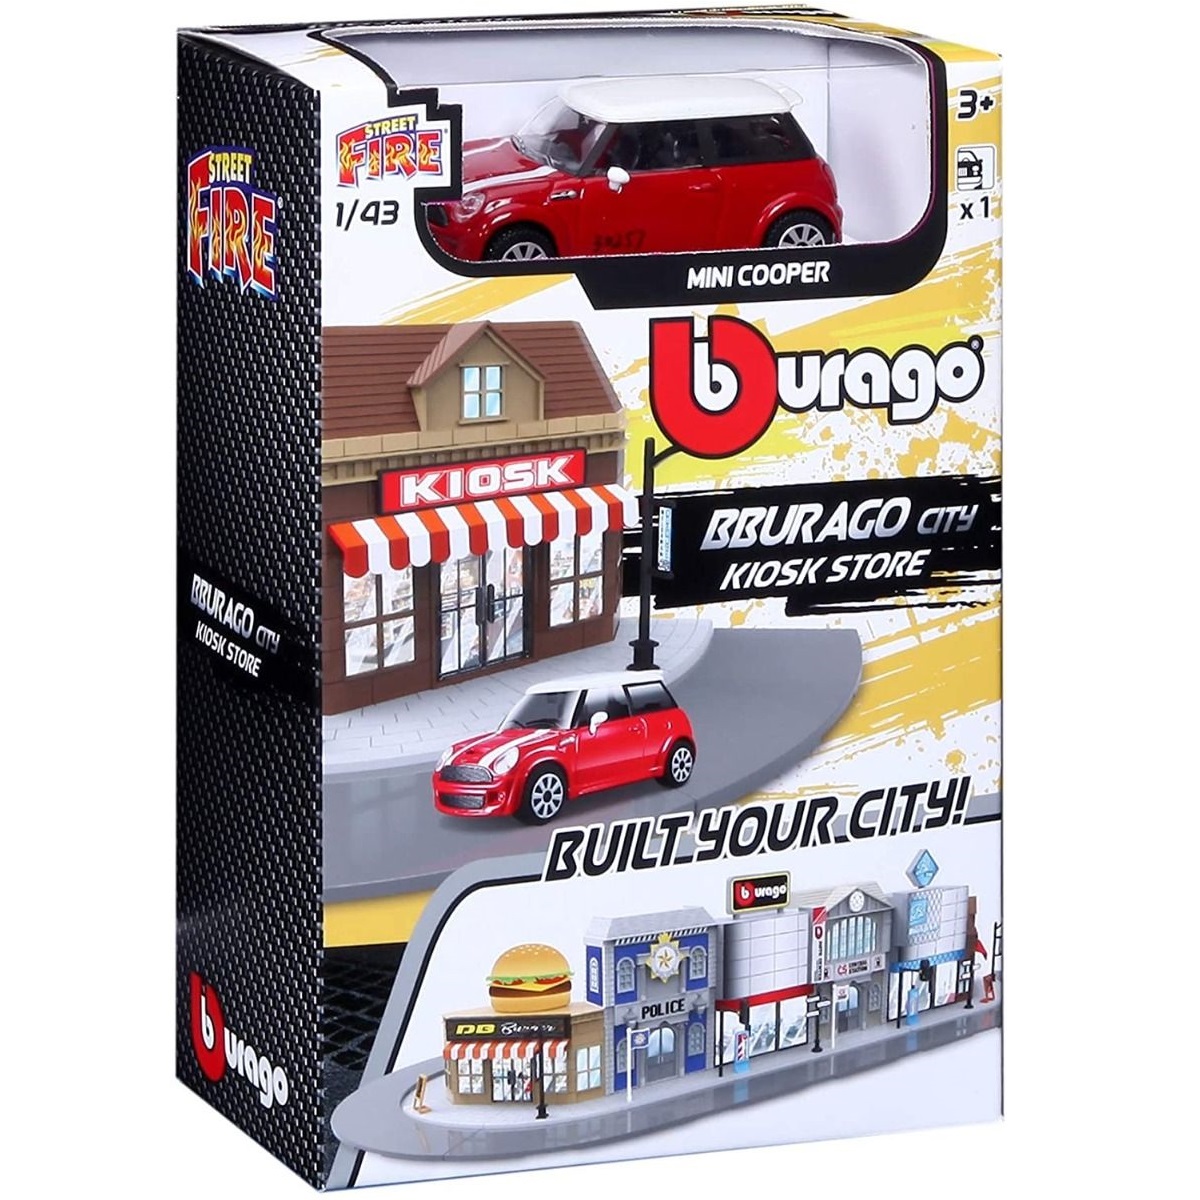 Игровой набор BBURAGO Магазин-киоск с металлической машинкой, 1:43, красный, 18-31506